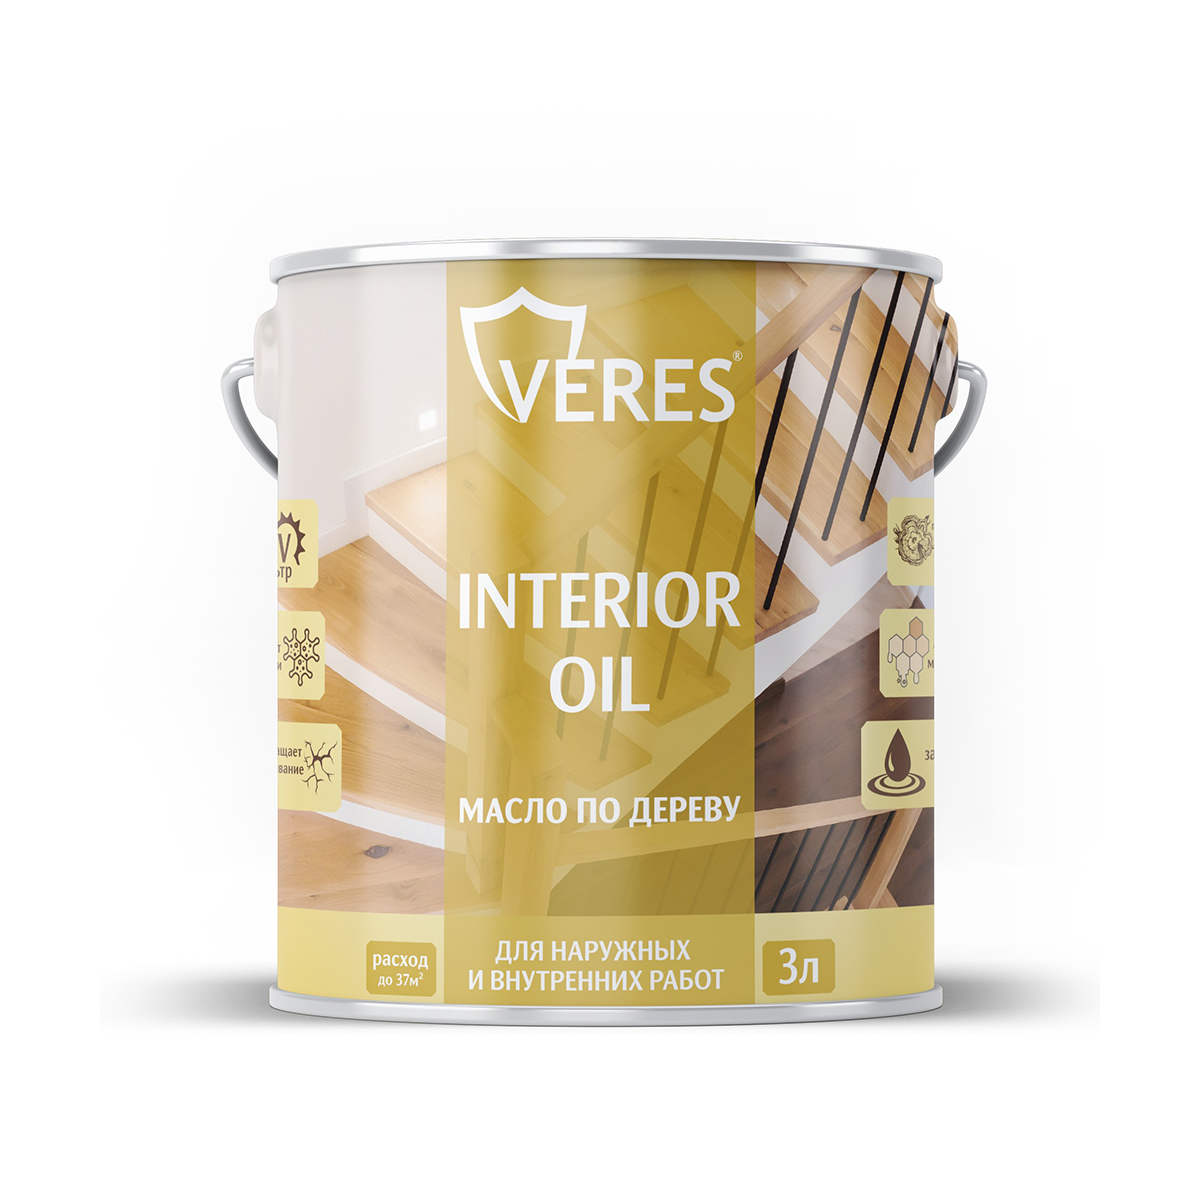 Масло для дерева Veres Interior Oil, 3 л, сосна - купить в Москве, цены на Мегамаркет